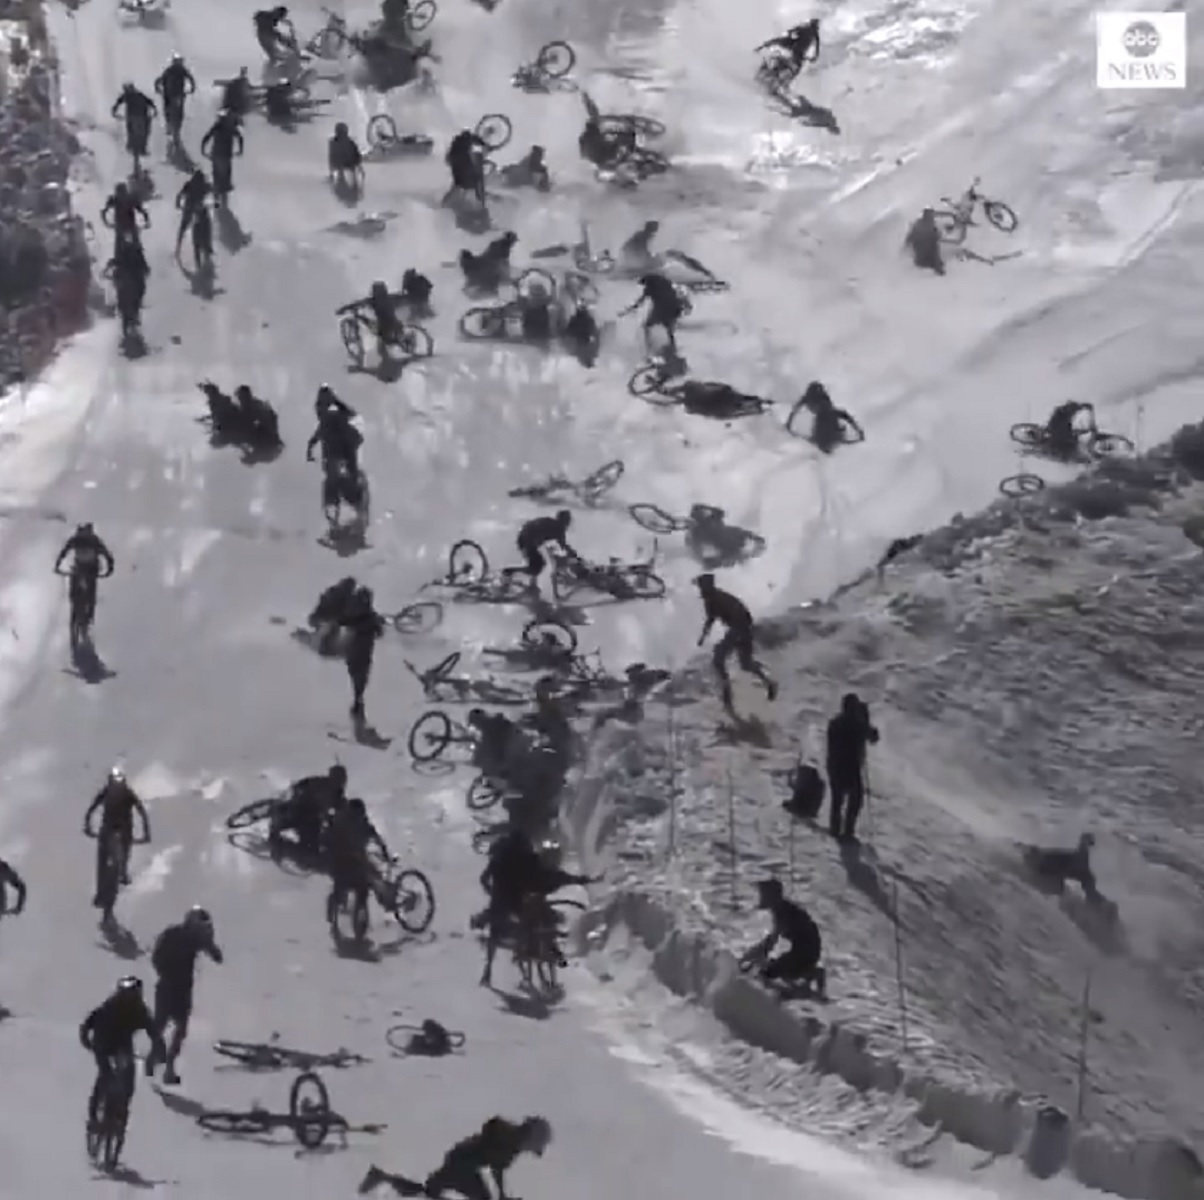 Carrera de bicicletas en una glaciar / ABC News Twitter